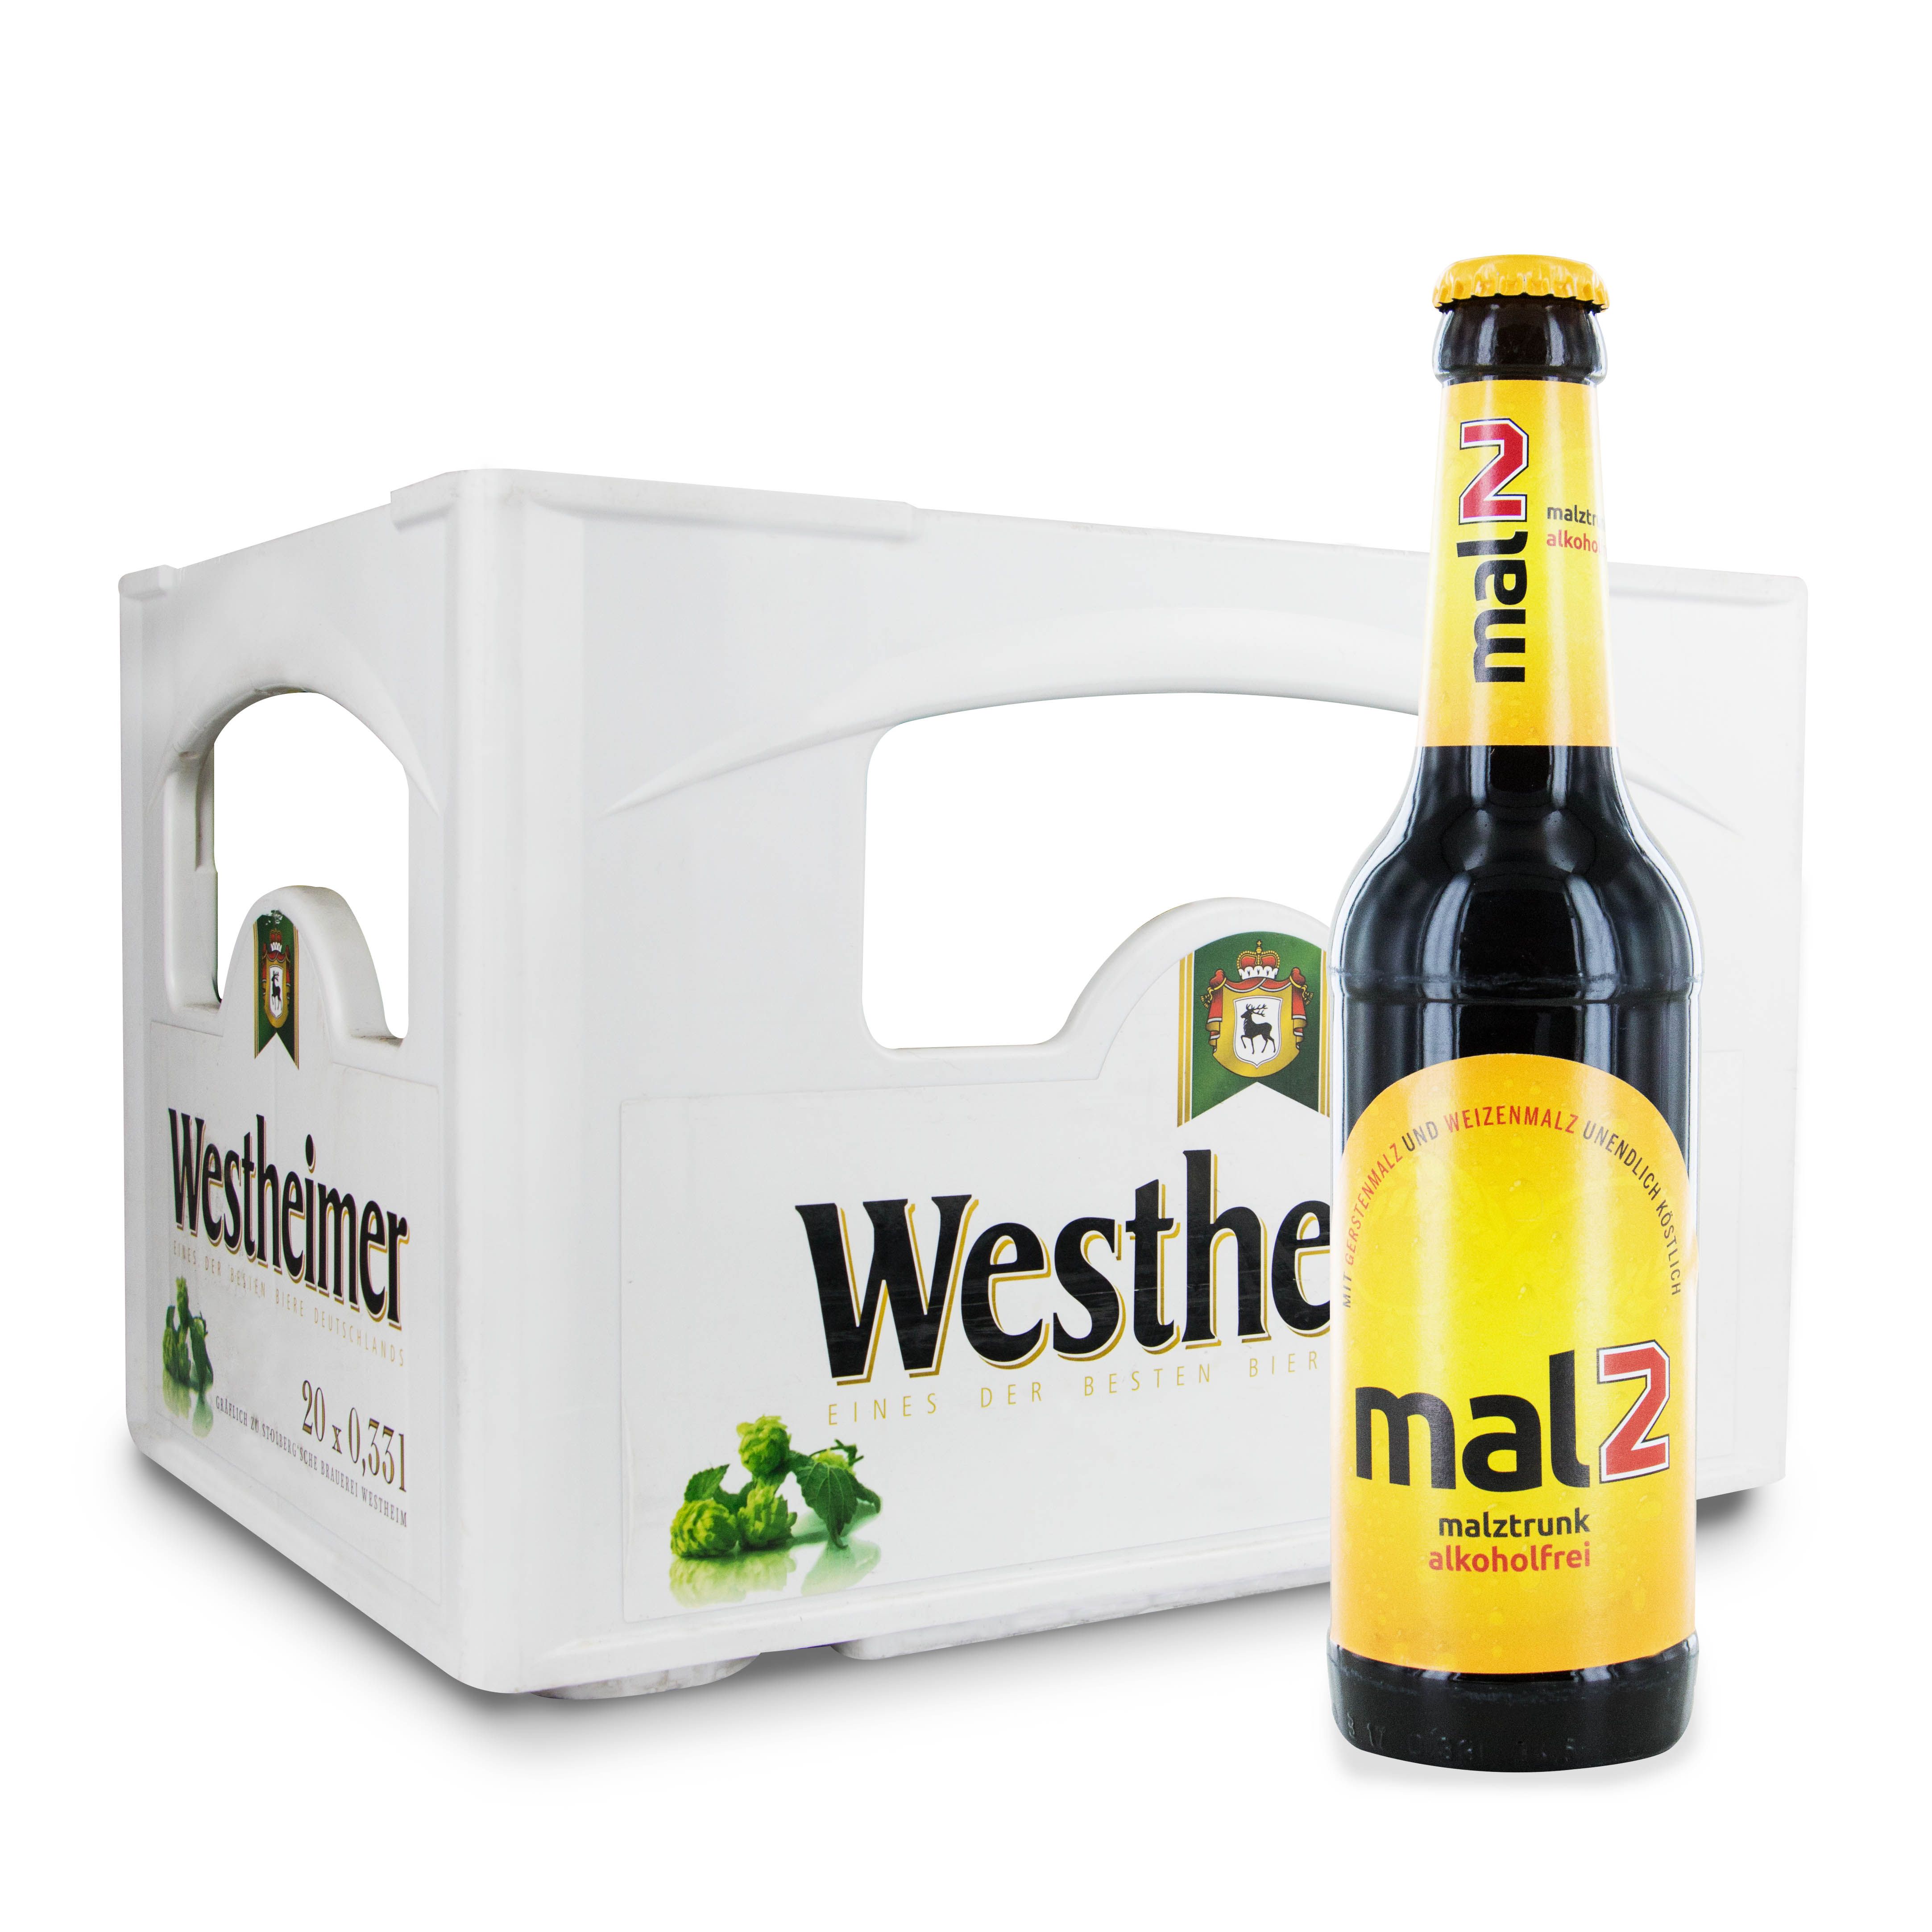 Westheimer alkoholfreies MalZ Malztrunk Einzelfasche